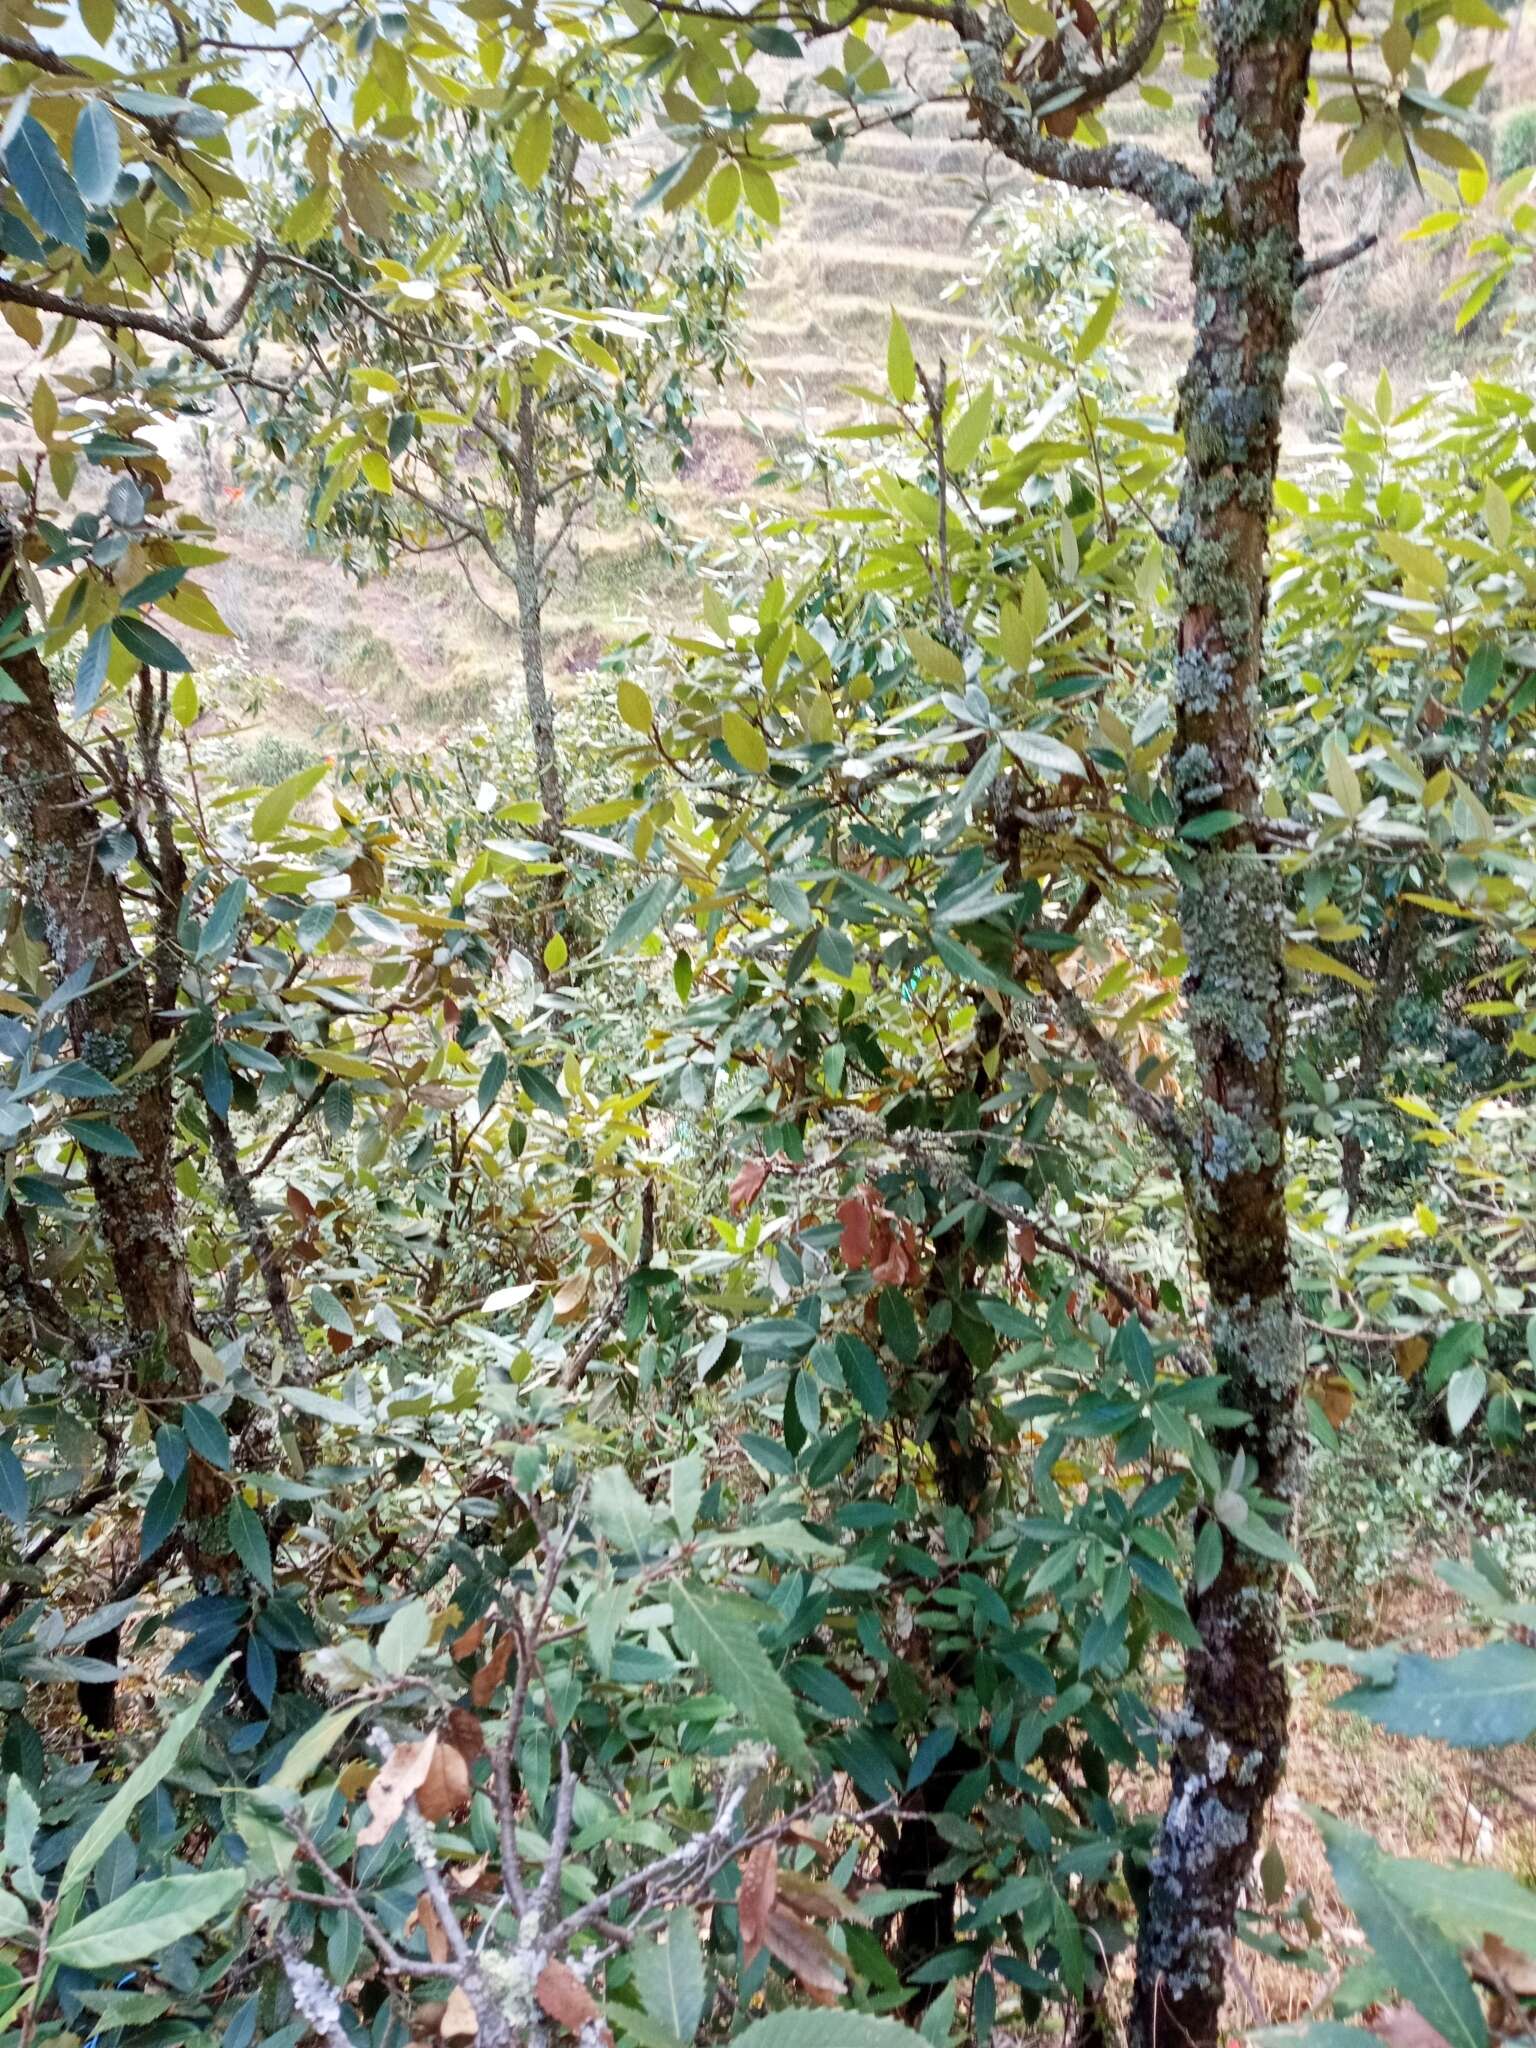 Image of Quercus oblongata D. Don